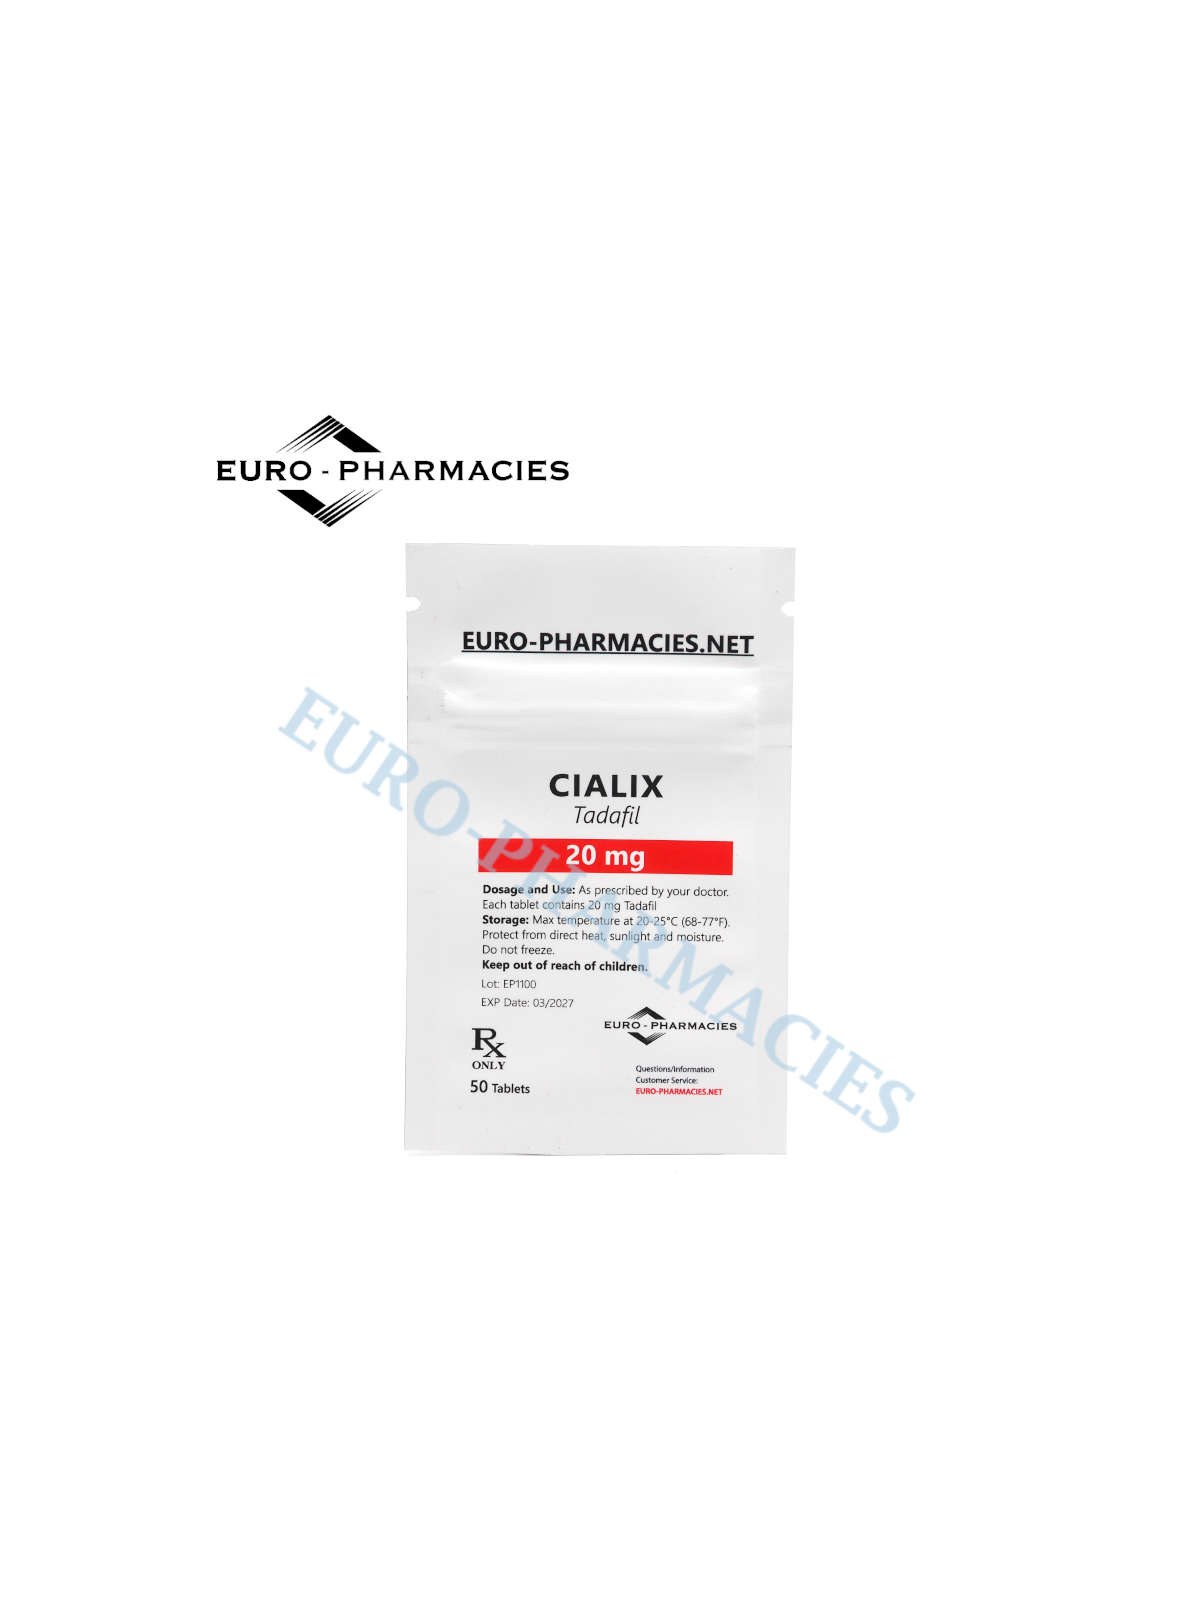 Cialix (Tadafil) - 20mg/tab, 50 pills/bag - Euro-Pharmacies - USA